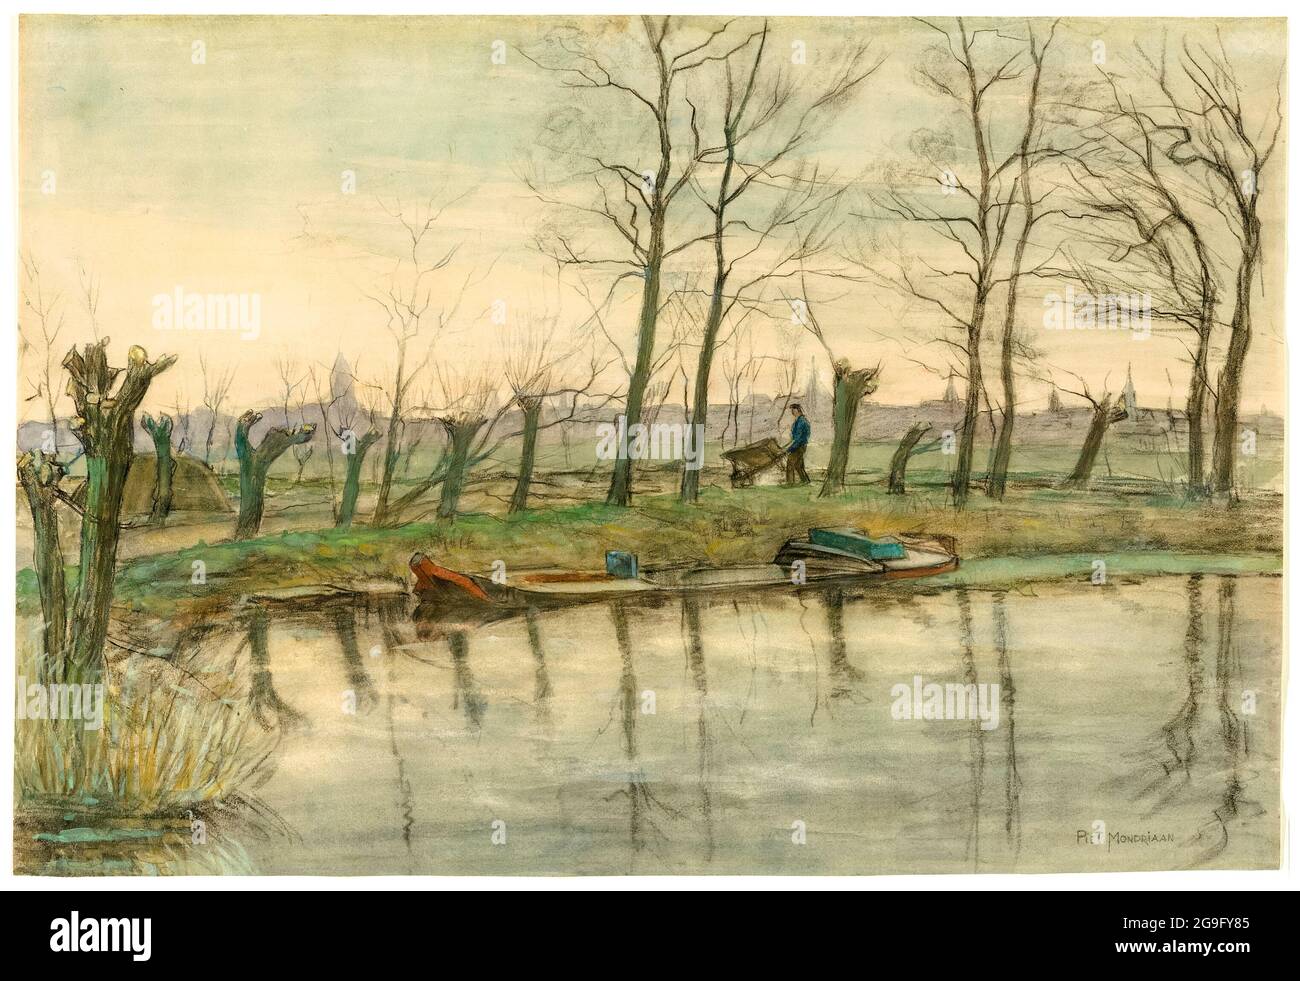 Piet Mondrian (Piet Mondriaan), Amsterdam Skyline: Vue de l'Ouest, peinture de paysage, vers 1899 Banque D'Images